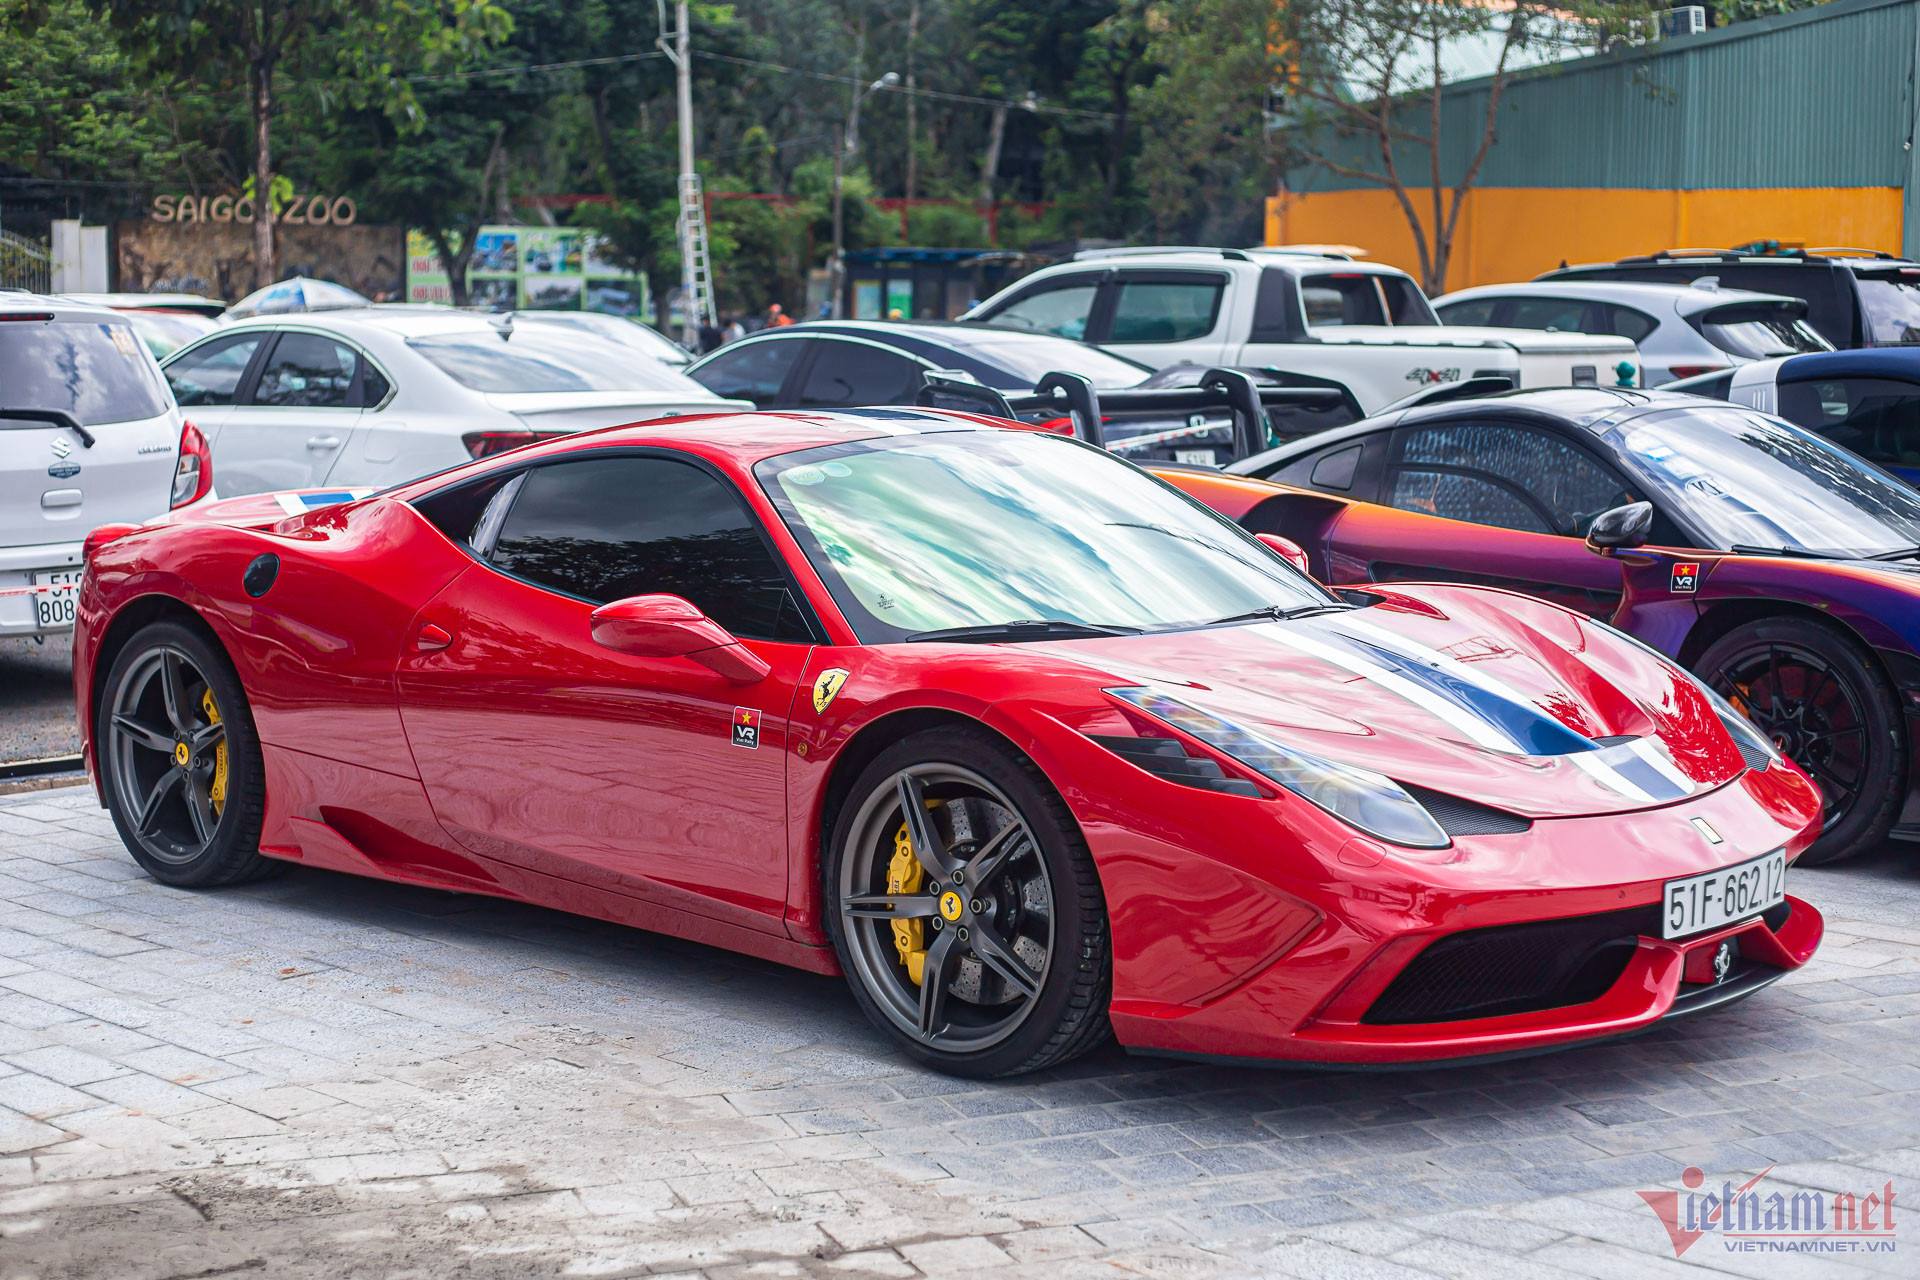 Sau siêu xe Ferrari, ông Đặng Lê Nguyên Vũ mua lại xe Maserati đã từng bán